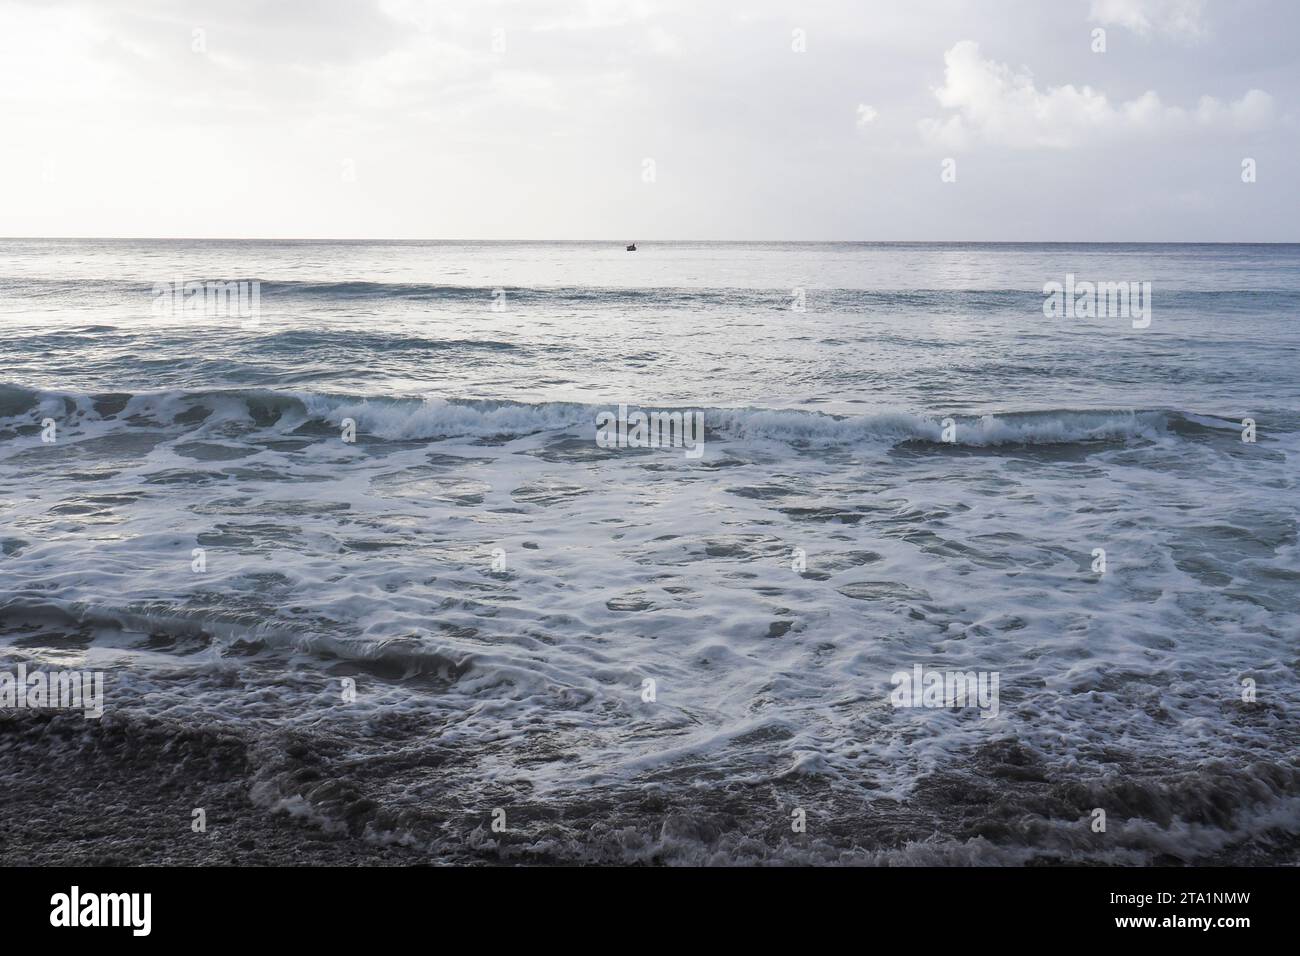 Anse couleuvre, Nord de la Martinique, plages les Plus sauvages de l'île. Sable noir volcanique et nature exubérante Martinica, Antille Foto Stock